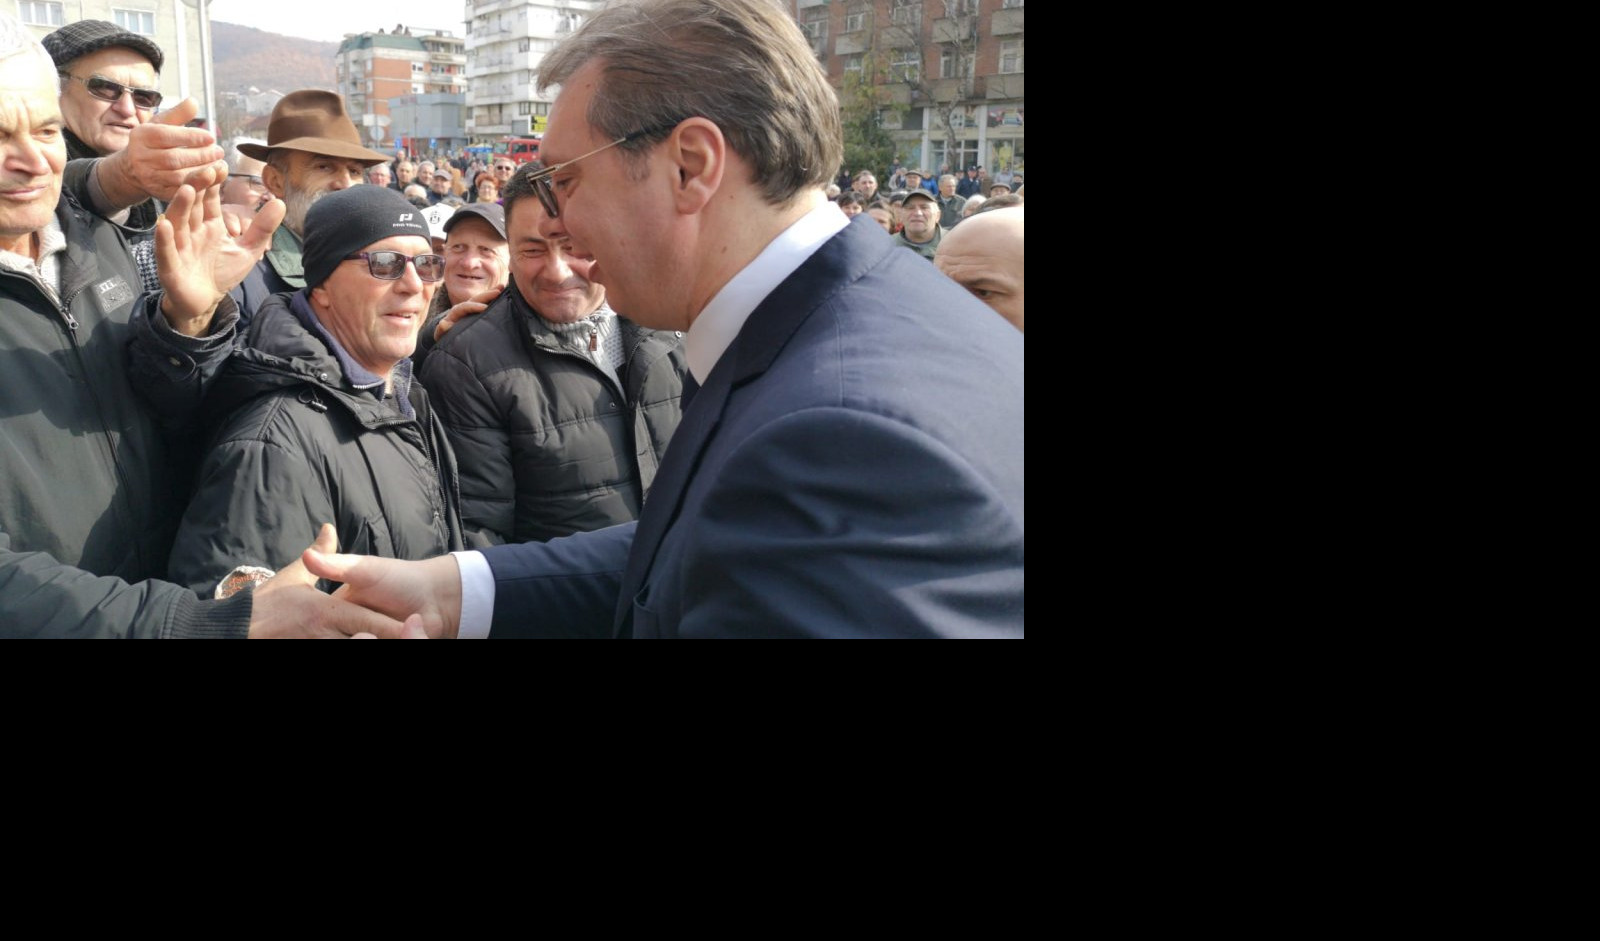 (VIDEO) POGLEDAJTE SPOT KOJIM JE POČELA KAMPANJA "BUDUĆNOST SRBIJE": Veliki broj građana Aleksinca pozdravio predsednika Vučića